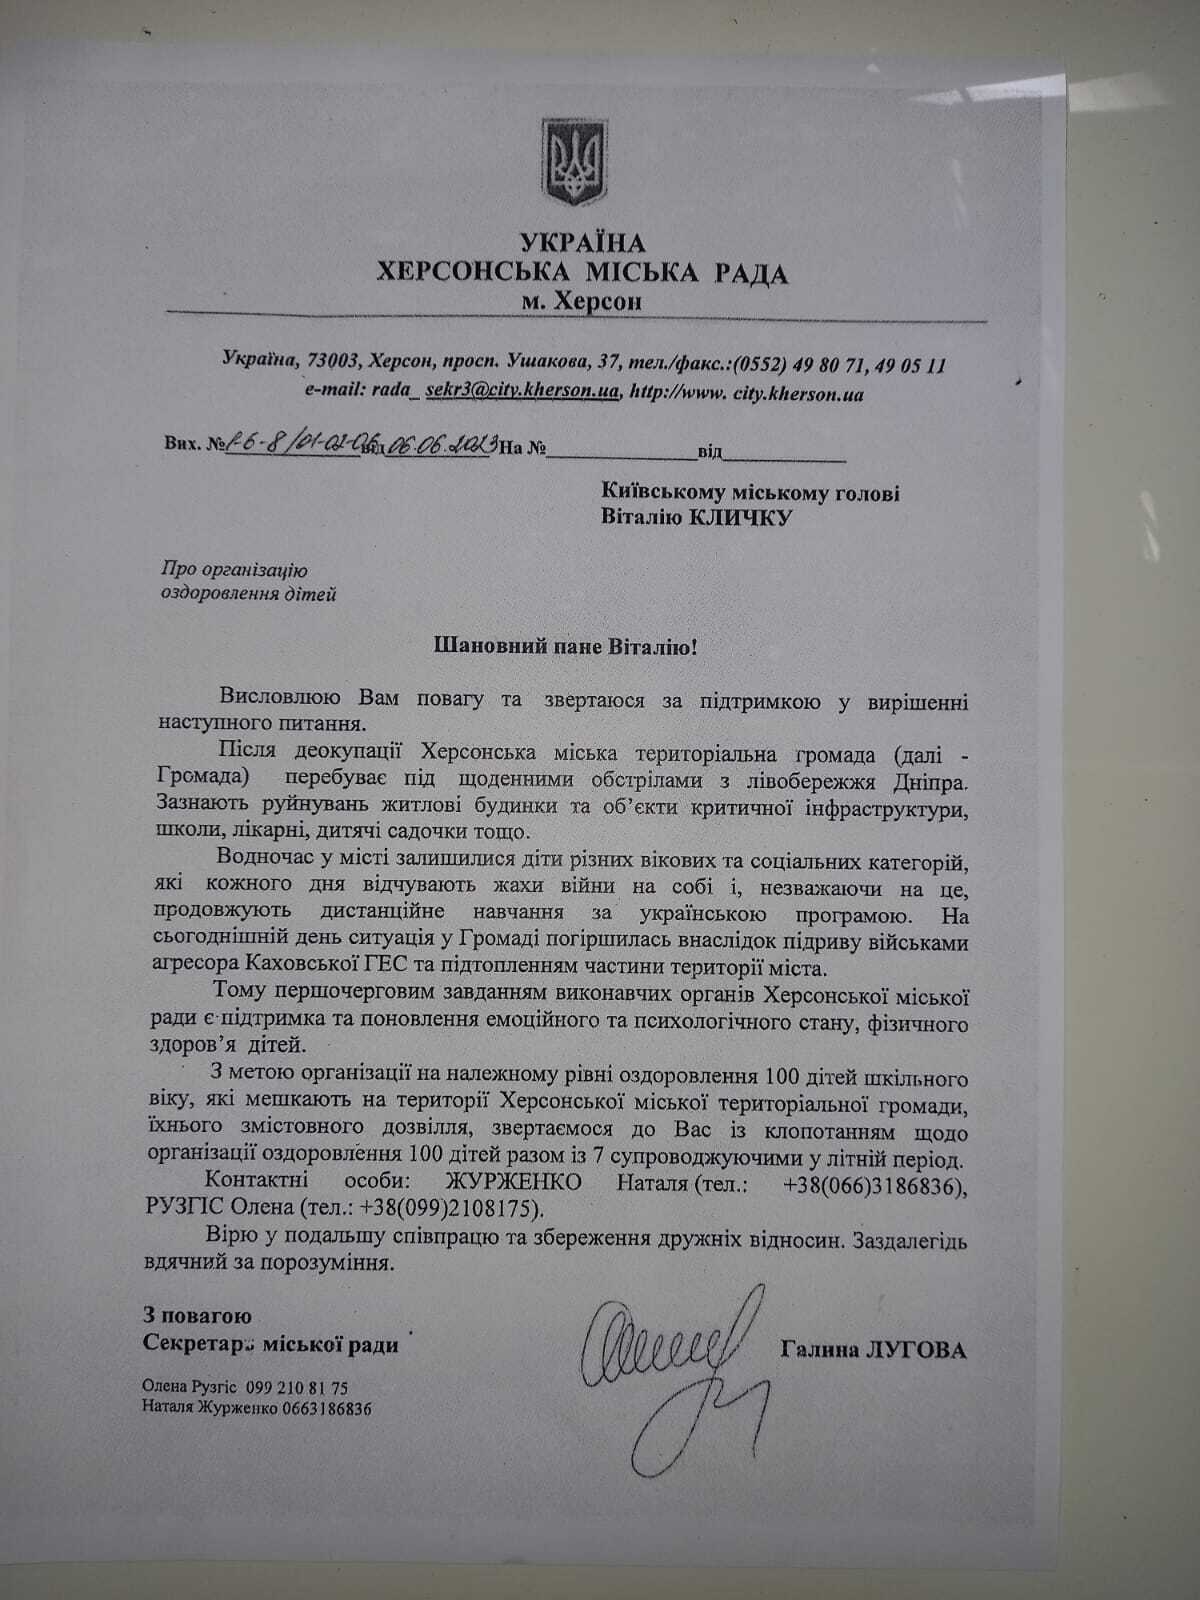 "Зупиніться, так не можна": Галина Лугова прокоментувала своє звільнення з посади секретаря міськради Херсону